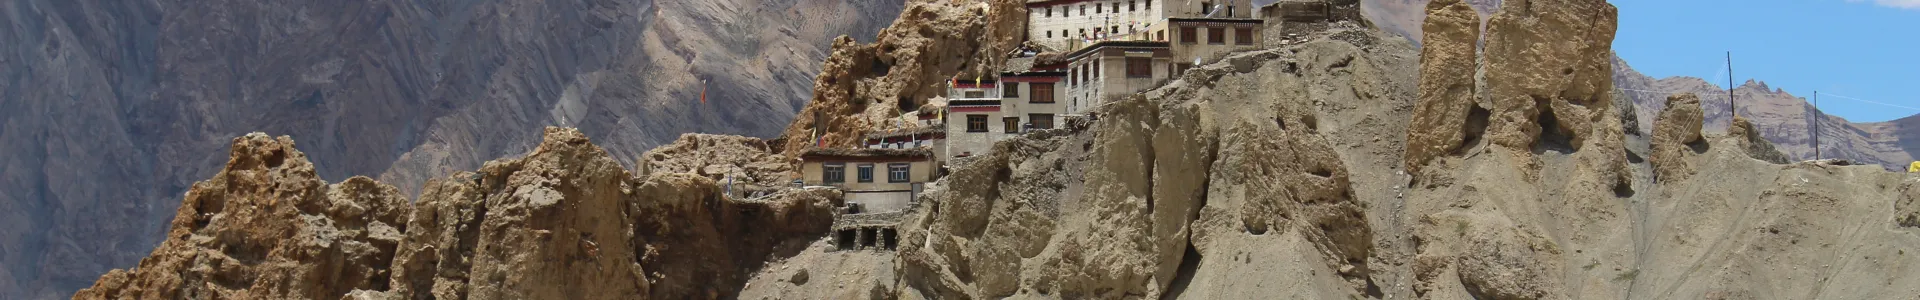 Klasztor tybetański w dolinie Spiti